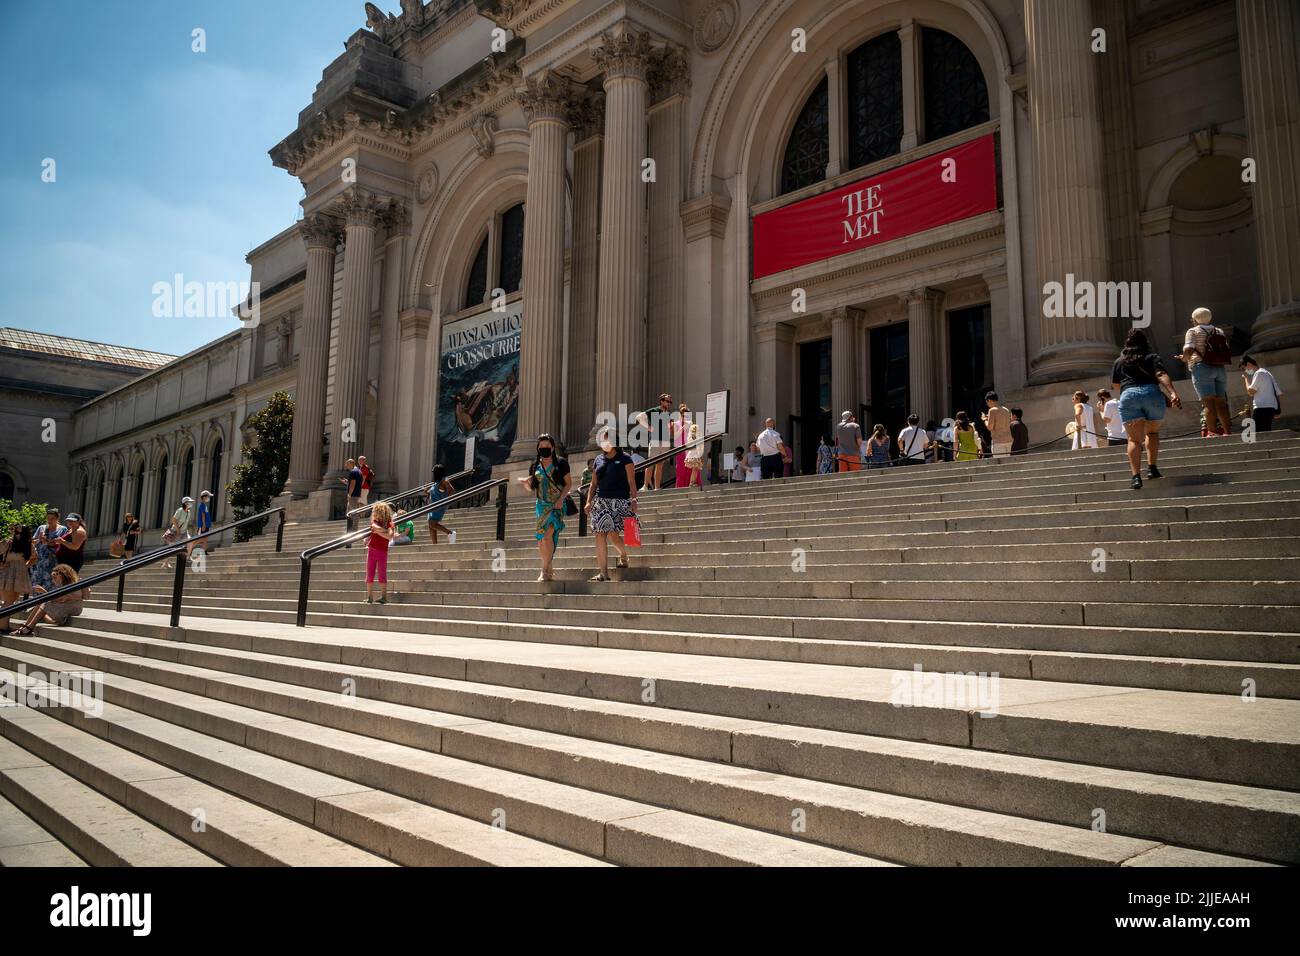 Besucher vor dem Metropolitan Museum of Art in New York backen während der Hitzewelle, die am Samstag, dem 23. Juli 2022, zu heiß ist, um auf den Stufen zu sitzen. Es wurde eine Wärmeempfehlung herausgegeben, bei der die Temperaturen am Sonntag voraussichtlich 98 Grad erreichen werden. (© Richard B. Levine) Stockfoto